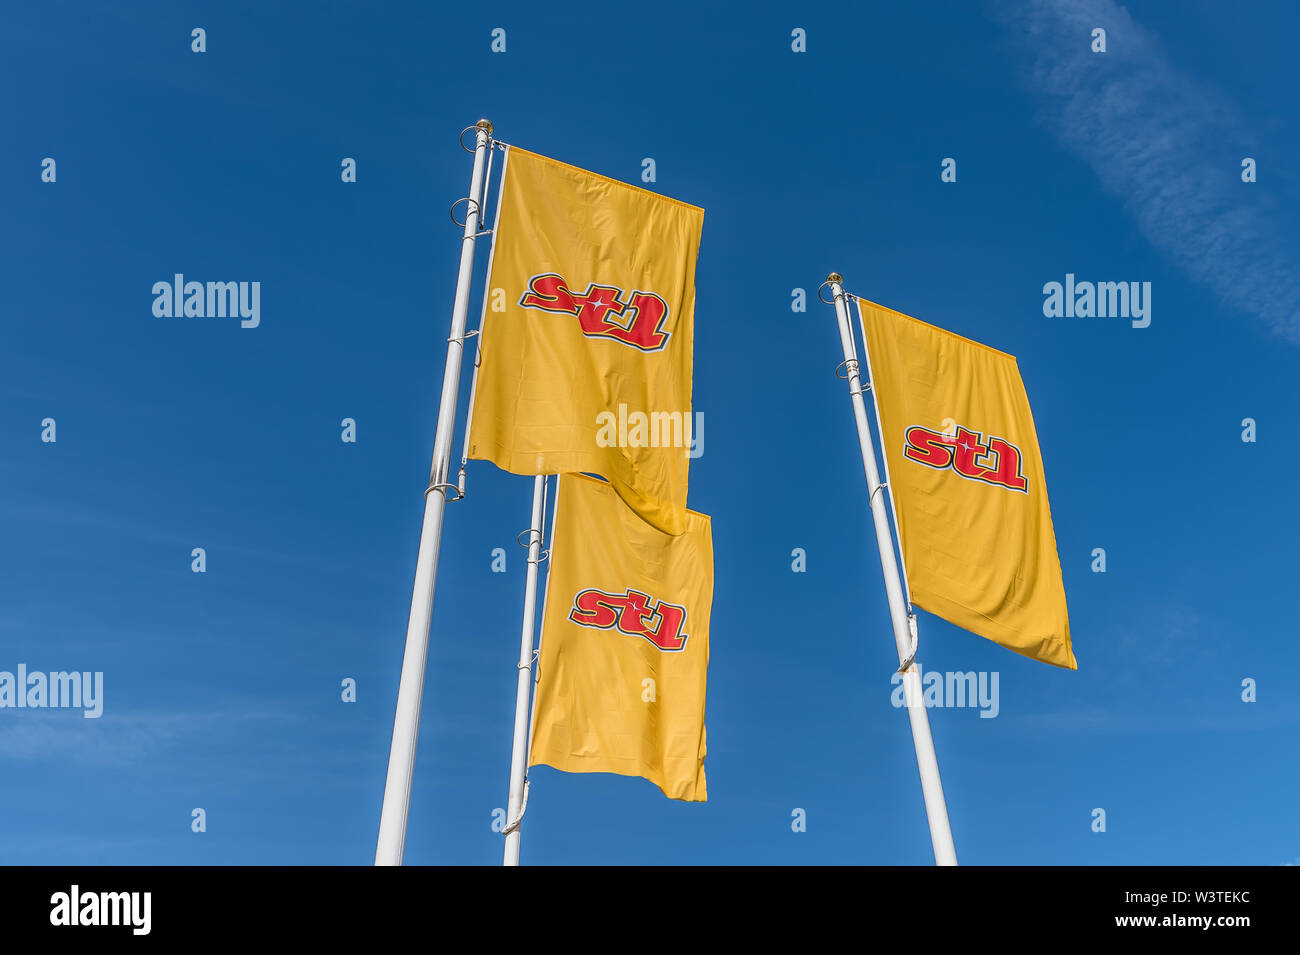 Trois drapeaux pour la marque st1 à une fuelstation en Suède, le 16 juin, 2019 Banque D'Images